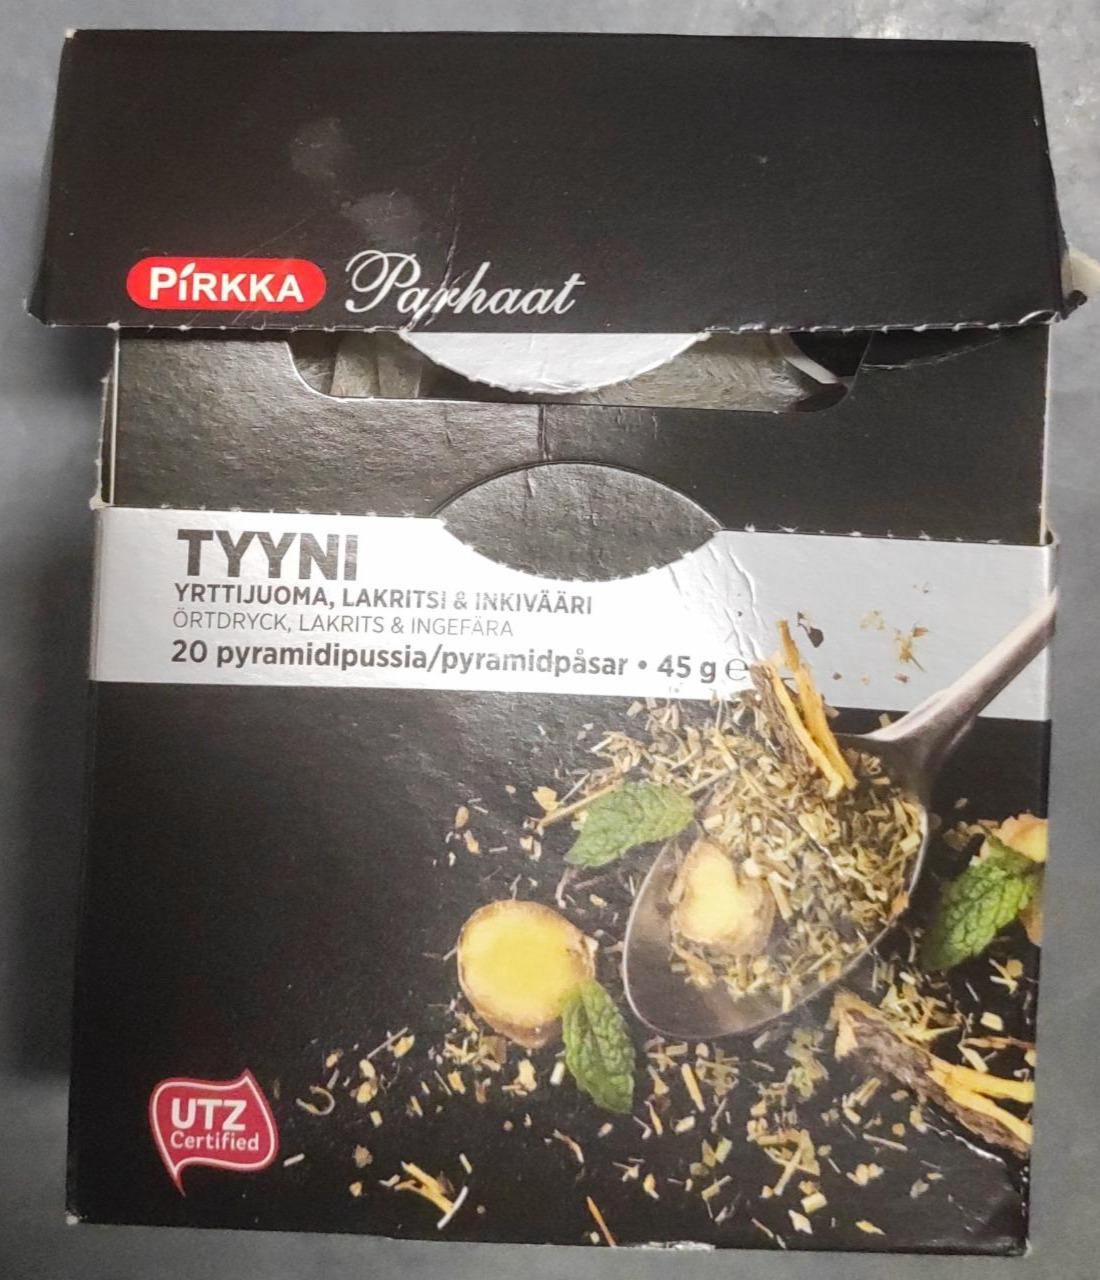 Fotografie - Parhaat Tyyni yrttijuoma lakritsi & inkivääri Pirkka